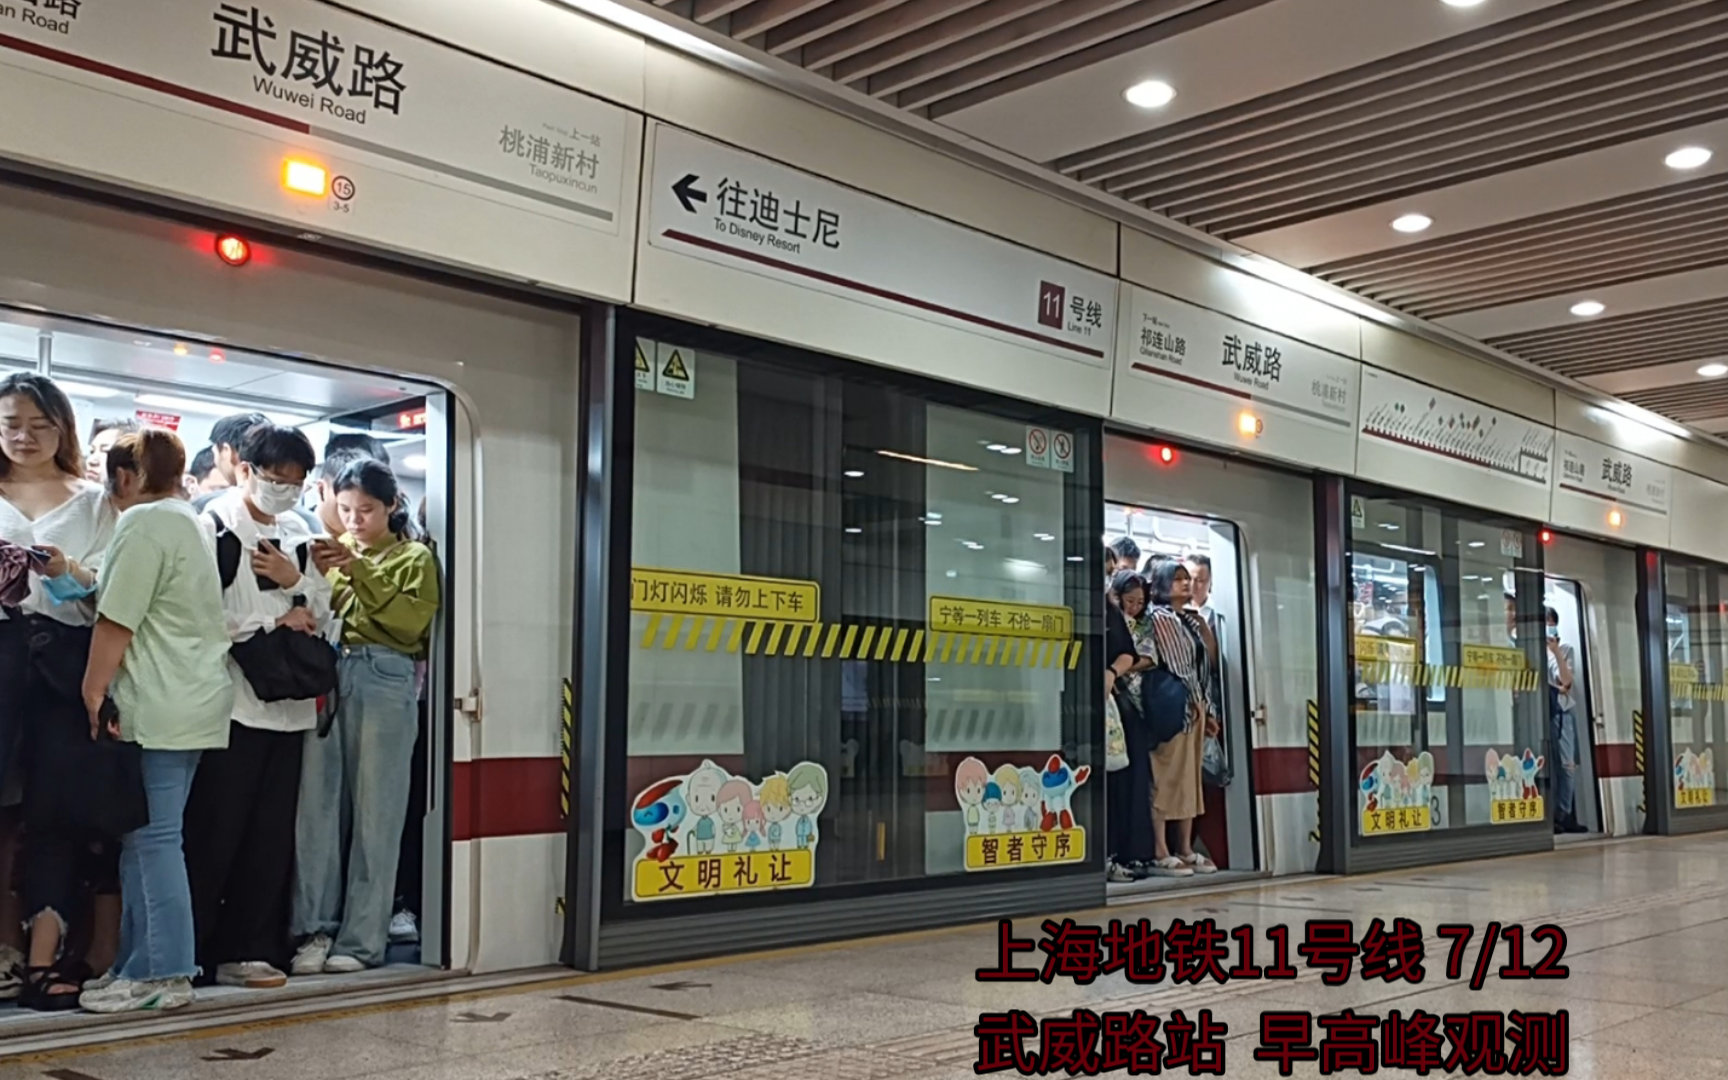 上海地铁11号线 7/12武威路站早高峰观测(迪士尼方向)